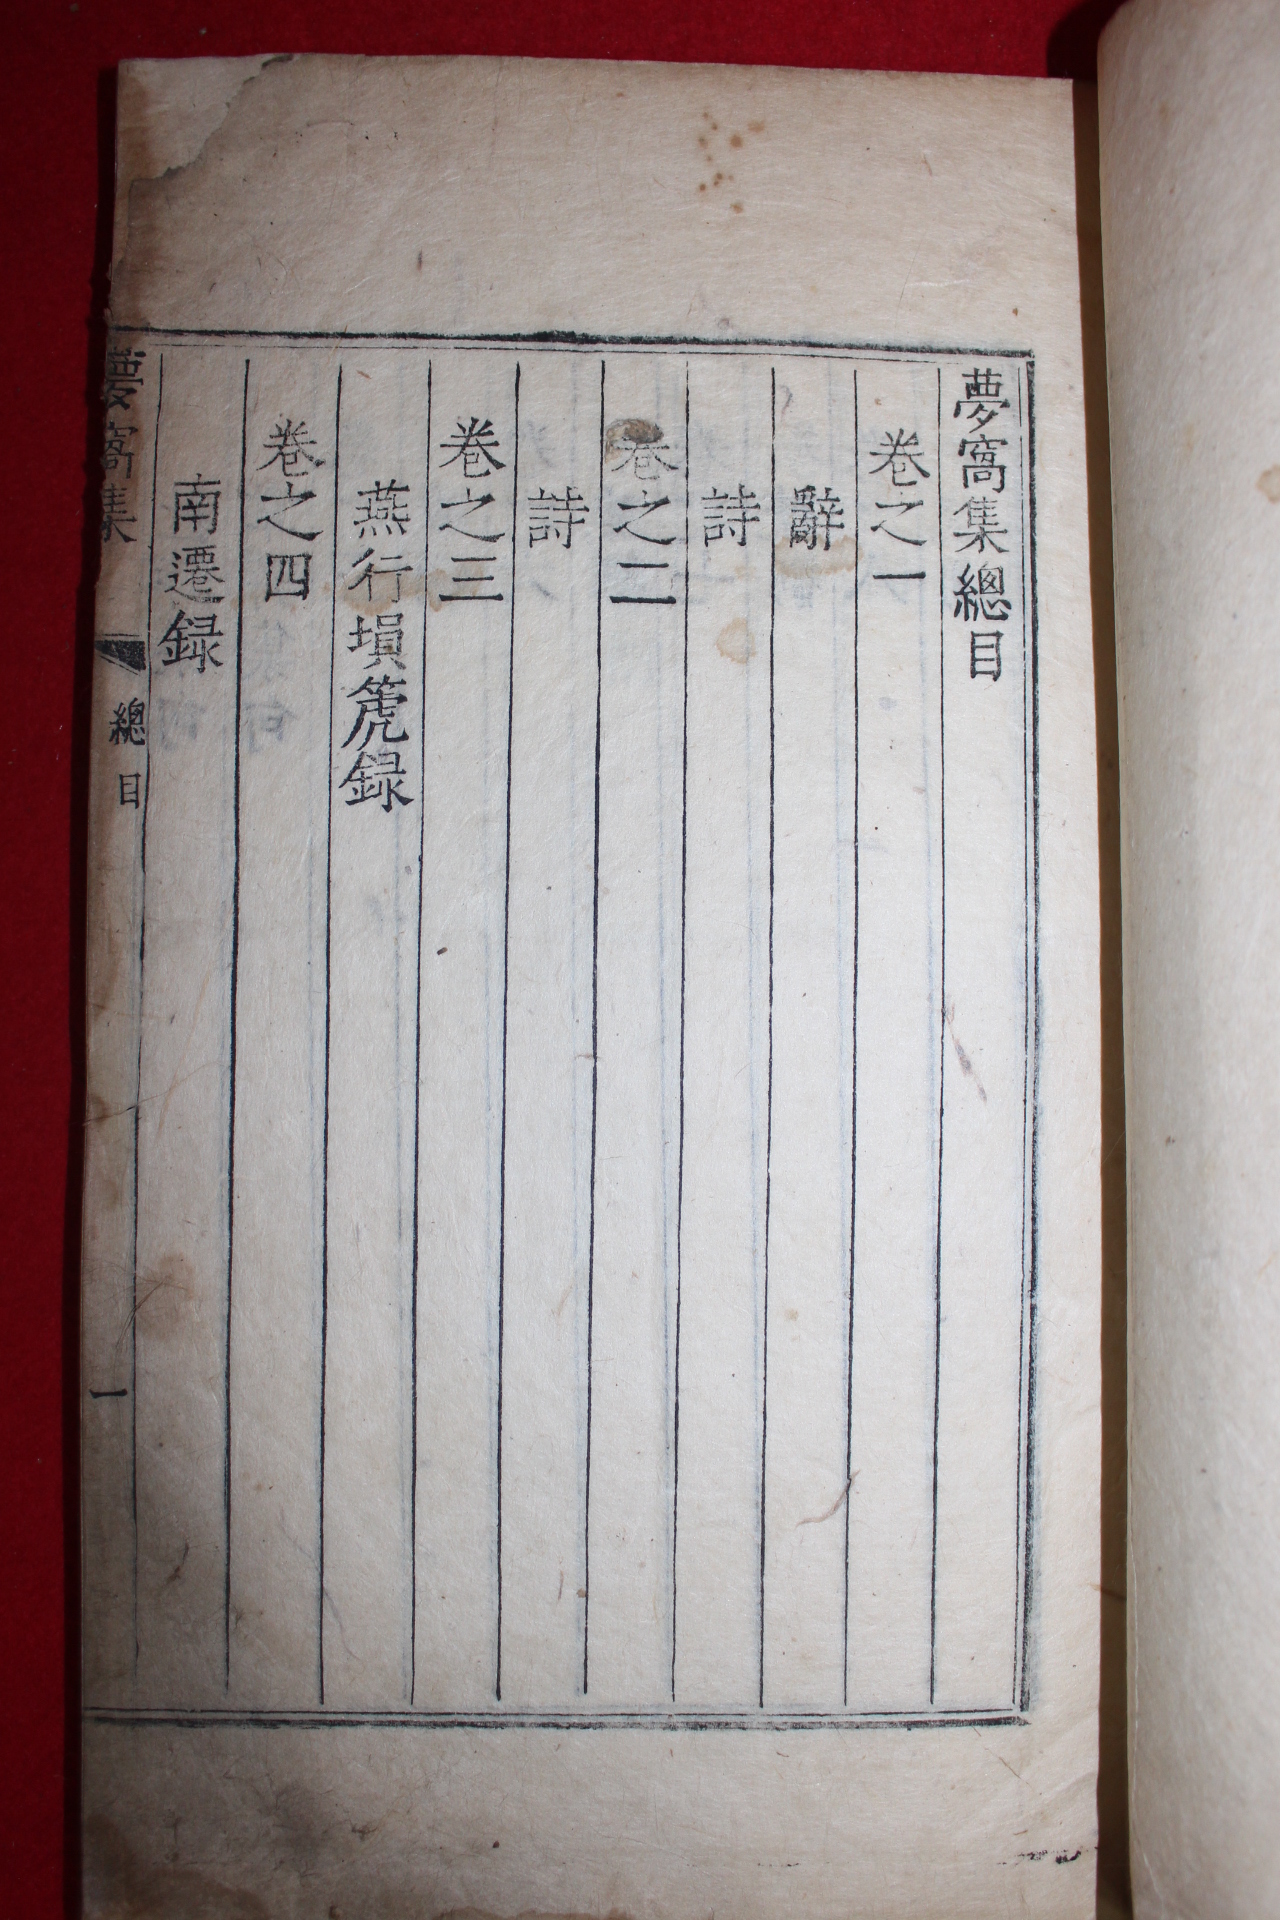 1758년 금속활자본(校書館印書體字) 김창집(金昌集) 몽와집(夢窩集)권1,2  1책